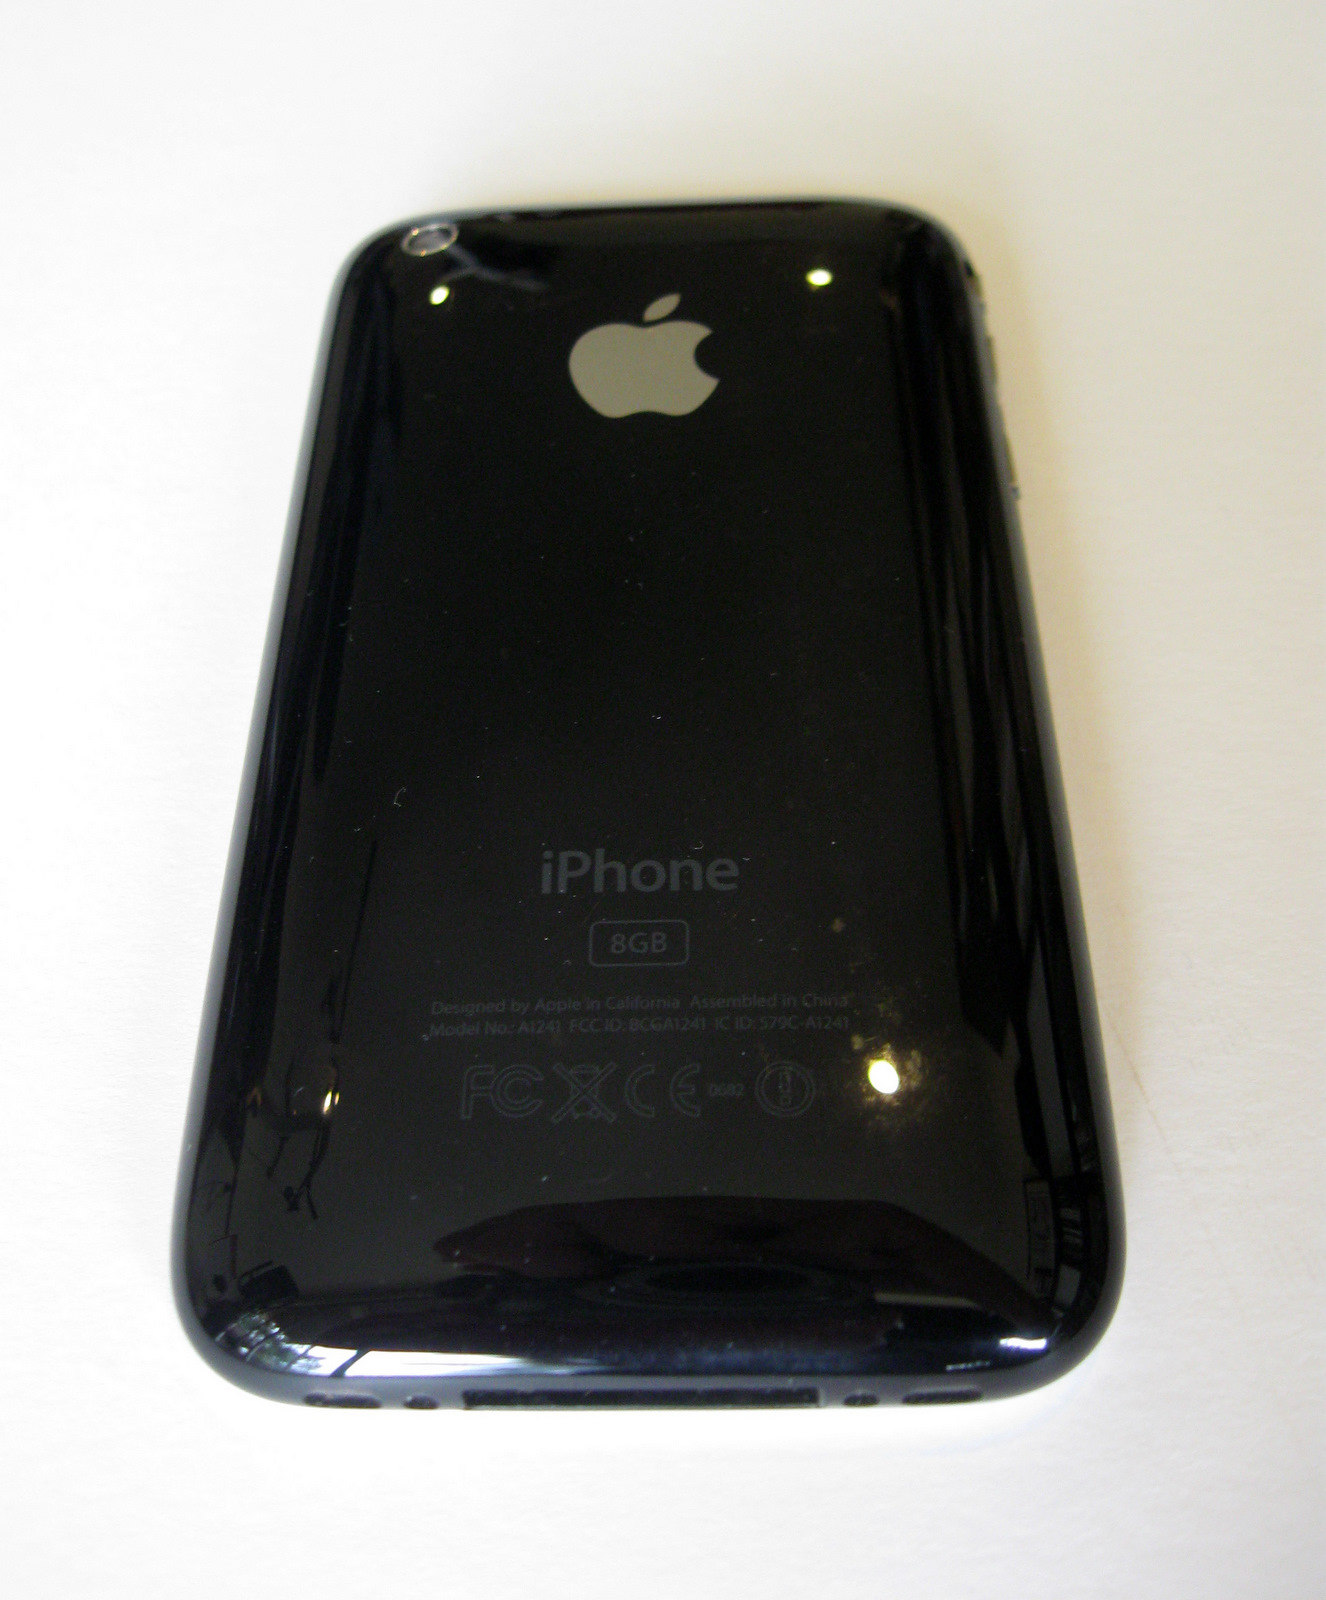 iPhone 3G 8GB   iPhone Catalog